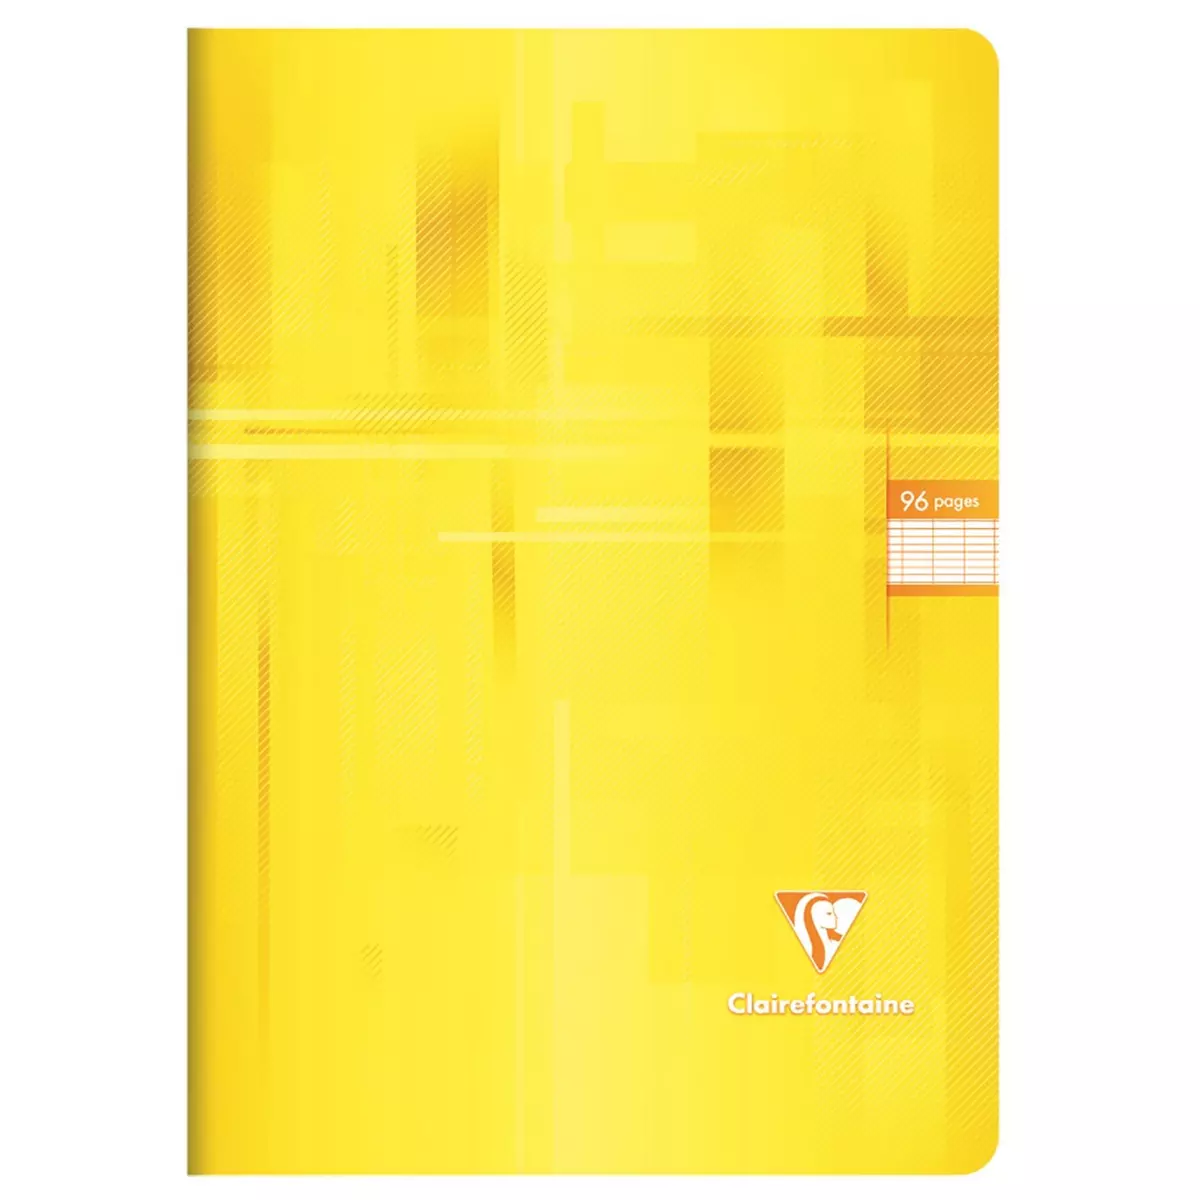 CLAIREFONTAINE Cahier piqué 24x32cm 96 pages grands carreaux Seyes jaune